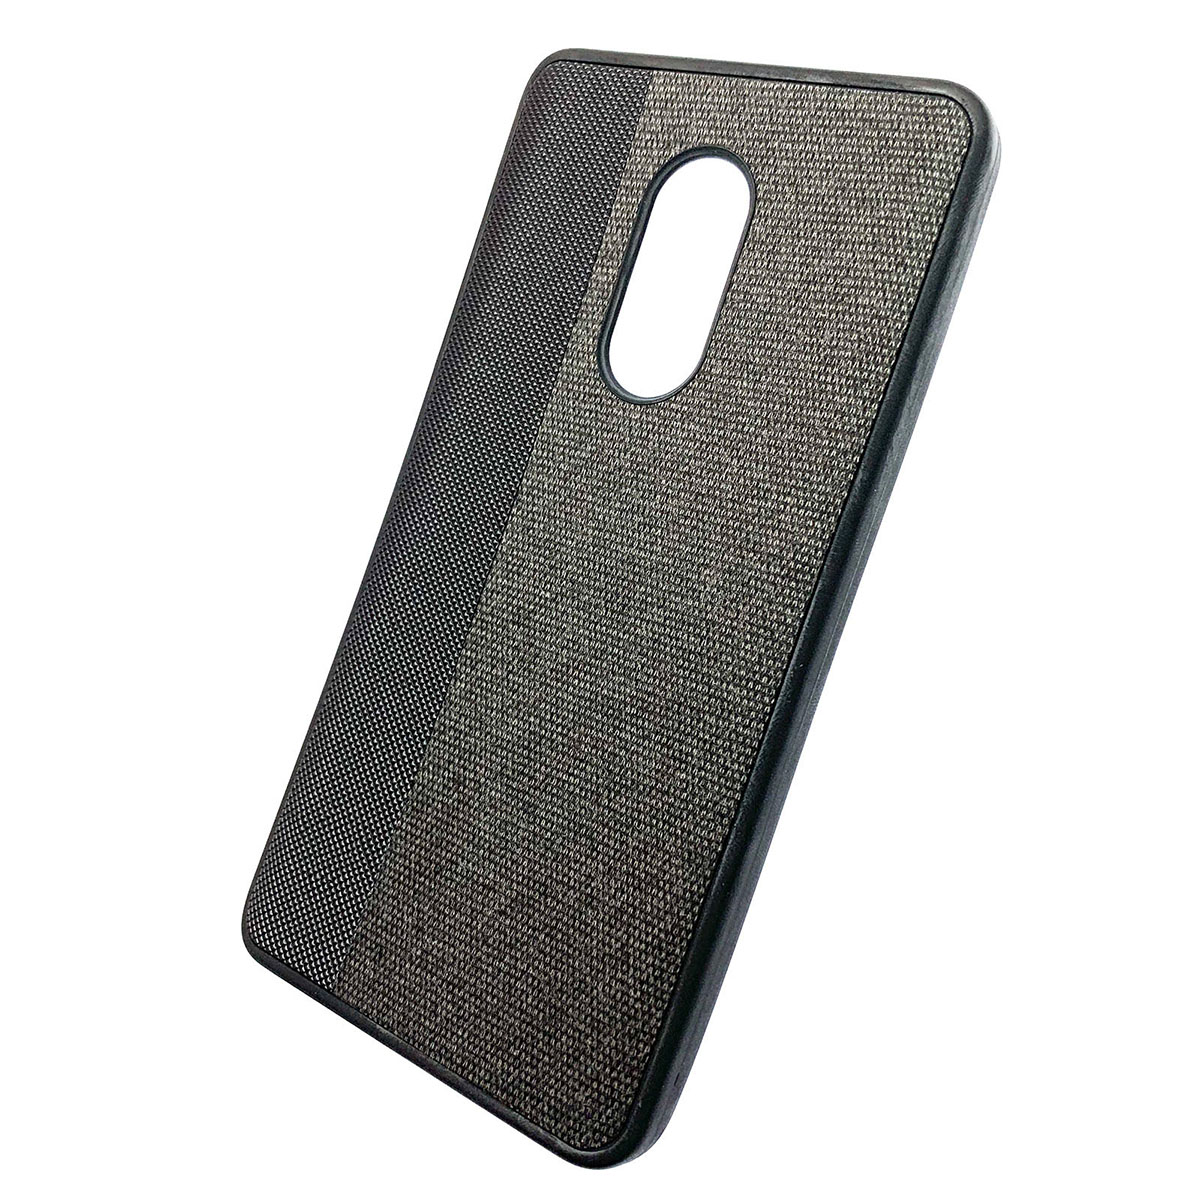 Чехол накладка для XIAOMI Redmi Note 4X, силикон, ткань, цвет черный.